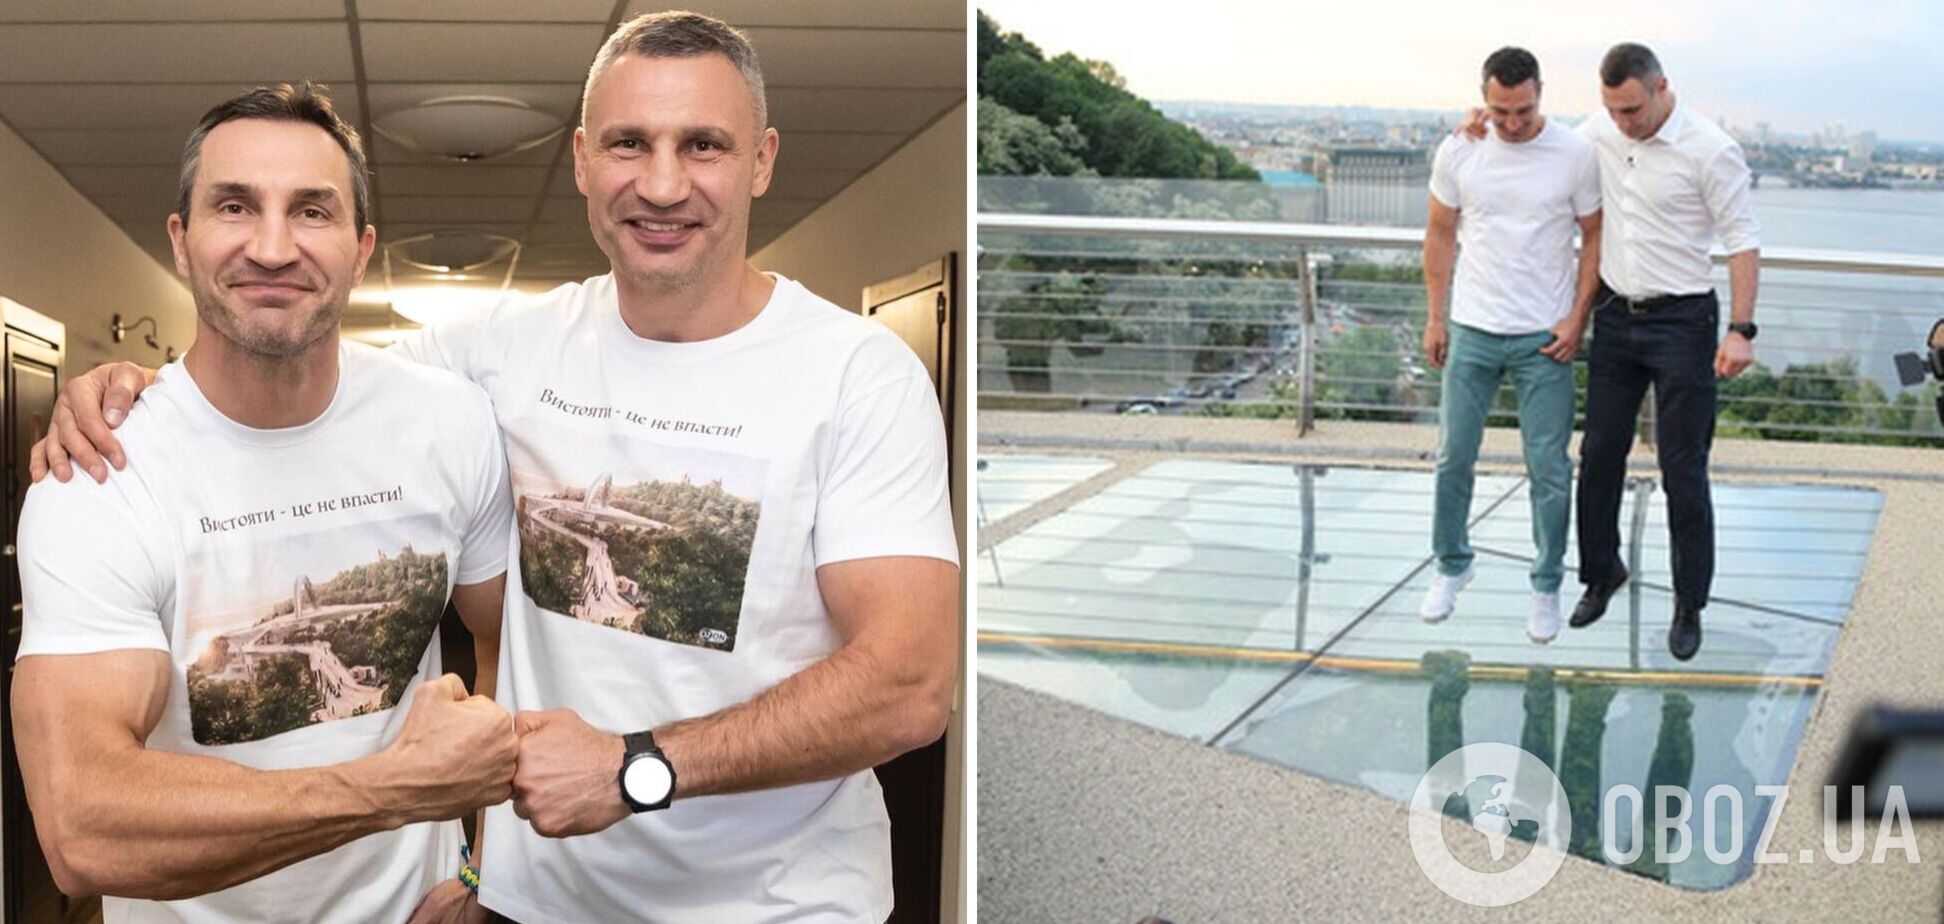 'Вистояти – це не впасти': Кличко у футболці зі скляним мостом анонсував книжку своїх афоризмів. Фото